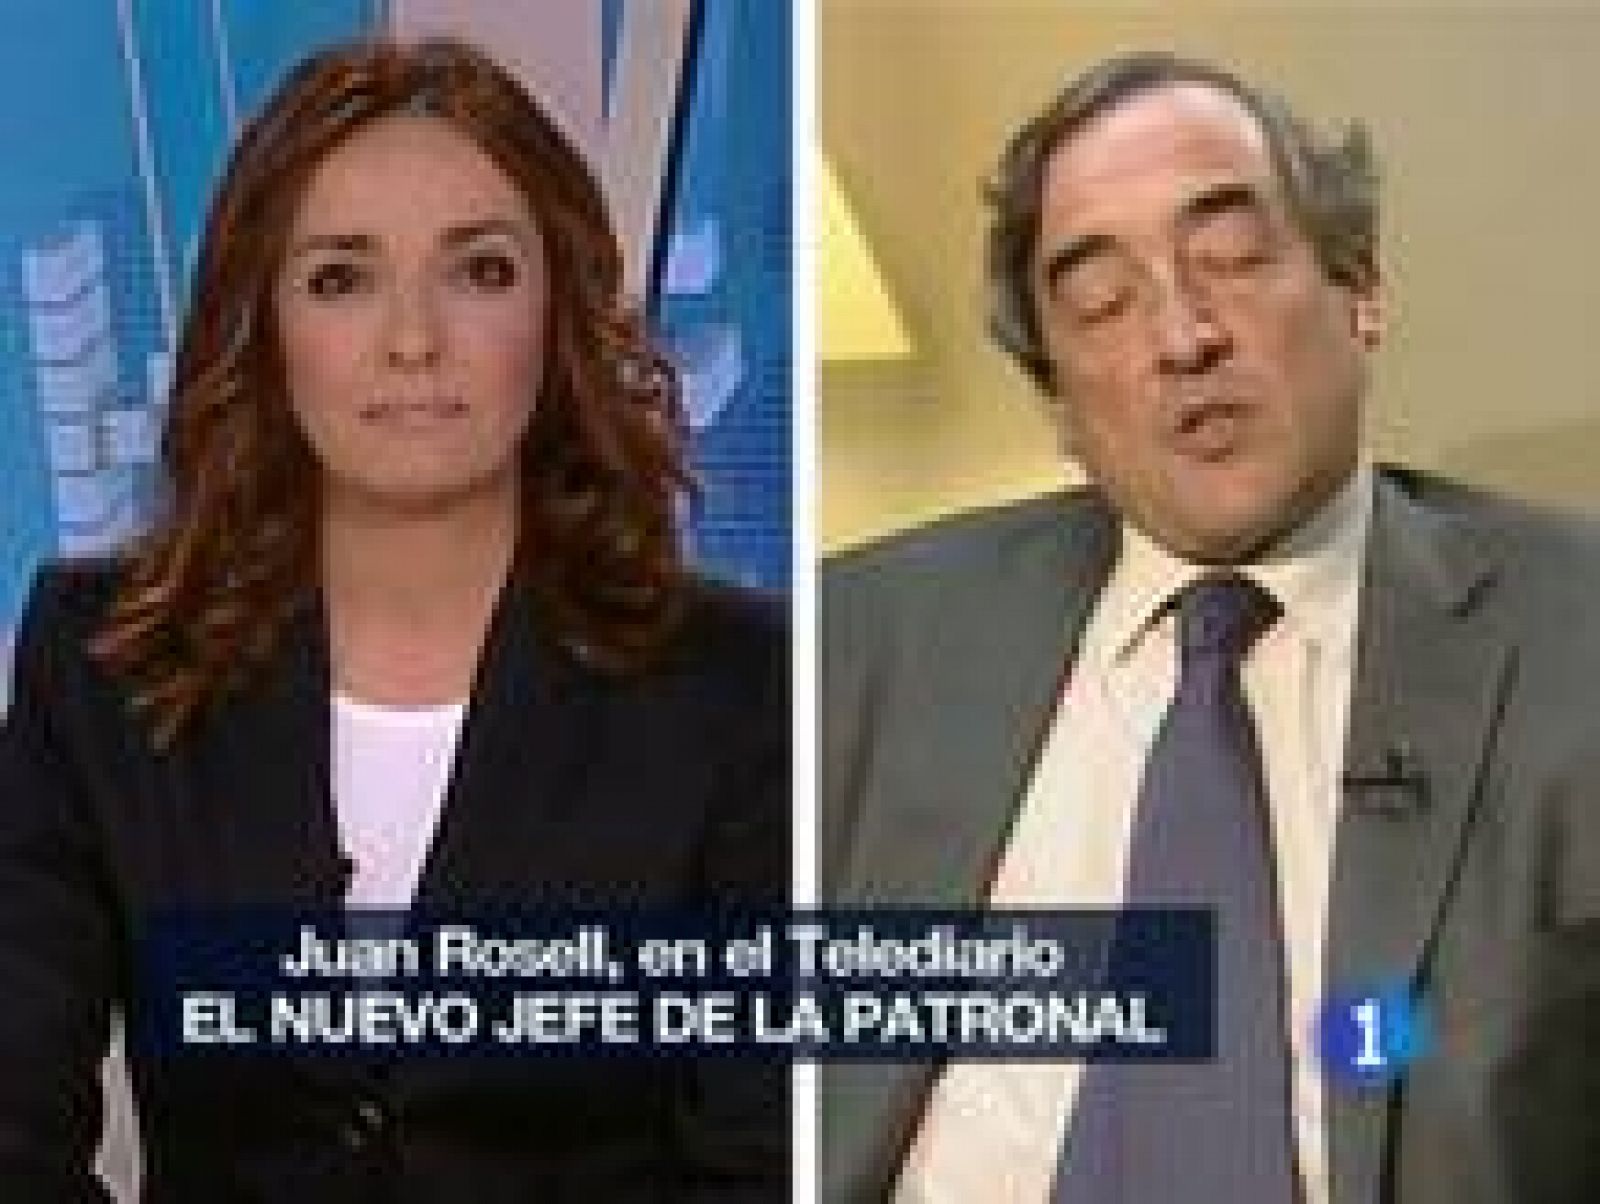 Juan Rosell justifica en TVE la gestión de la crisis del Gobierno